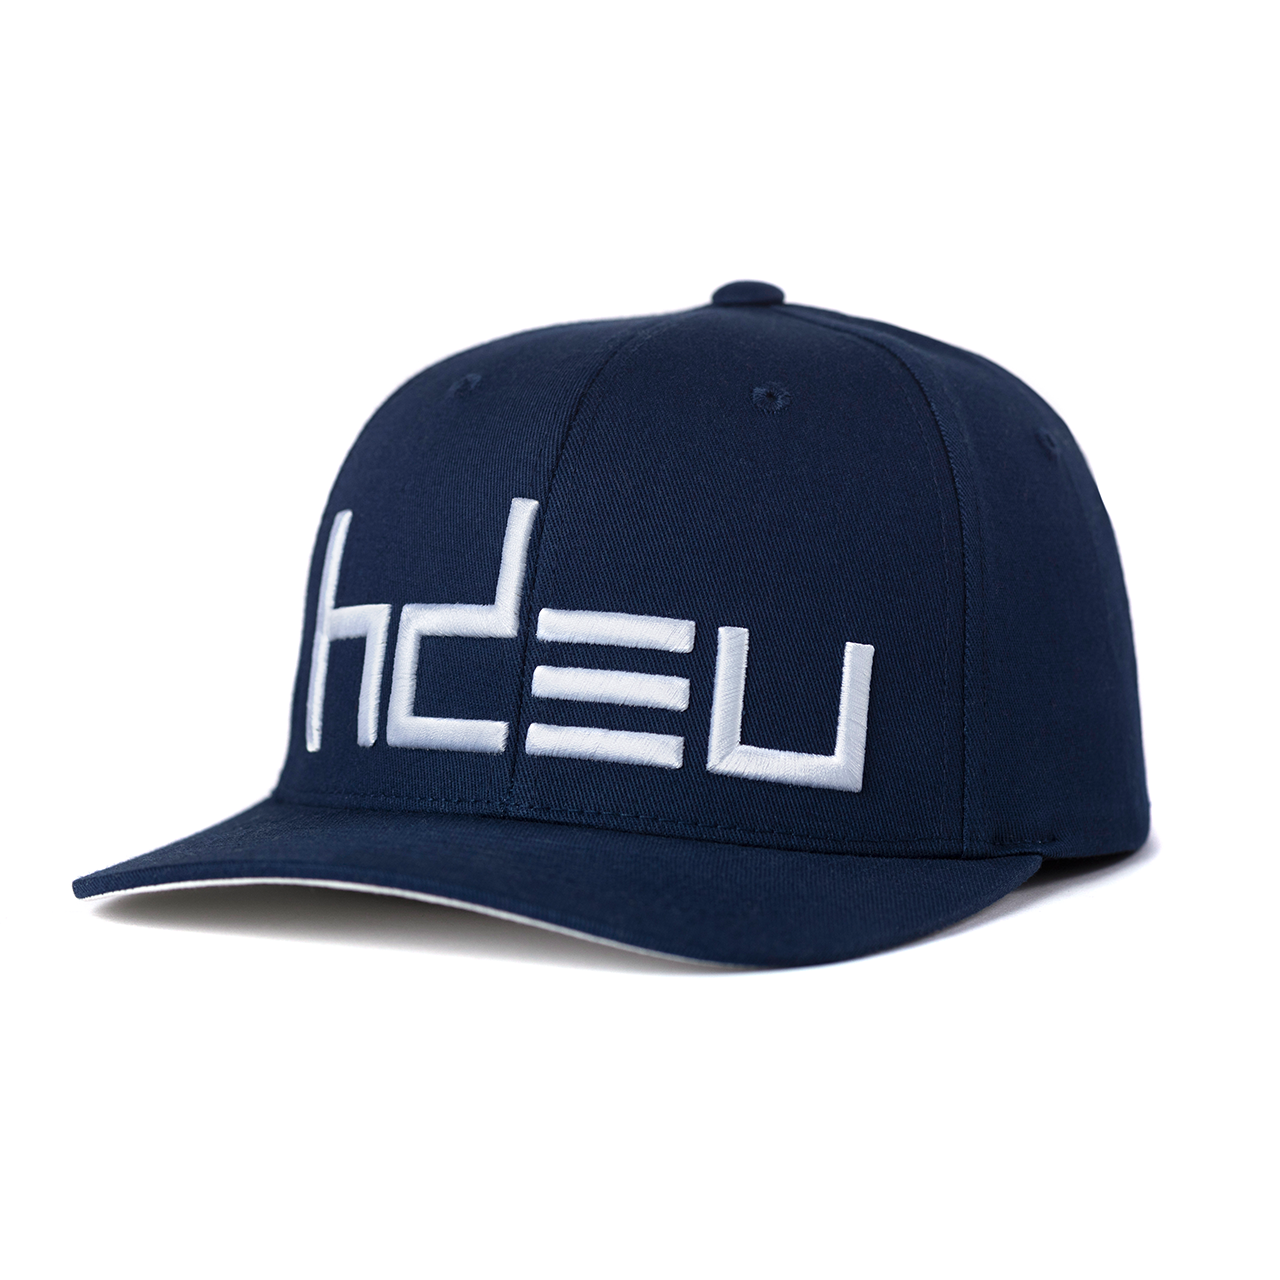 2022 HDEU CLASSIC NAVY FLEXFIT HAT – Head Down Eyes Up Official Merchandise